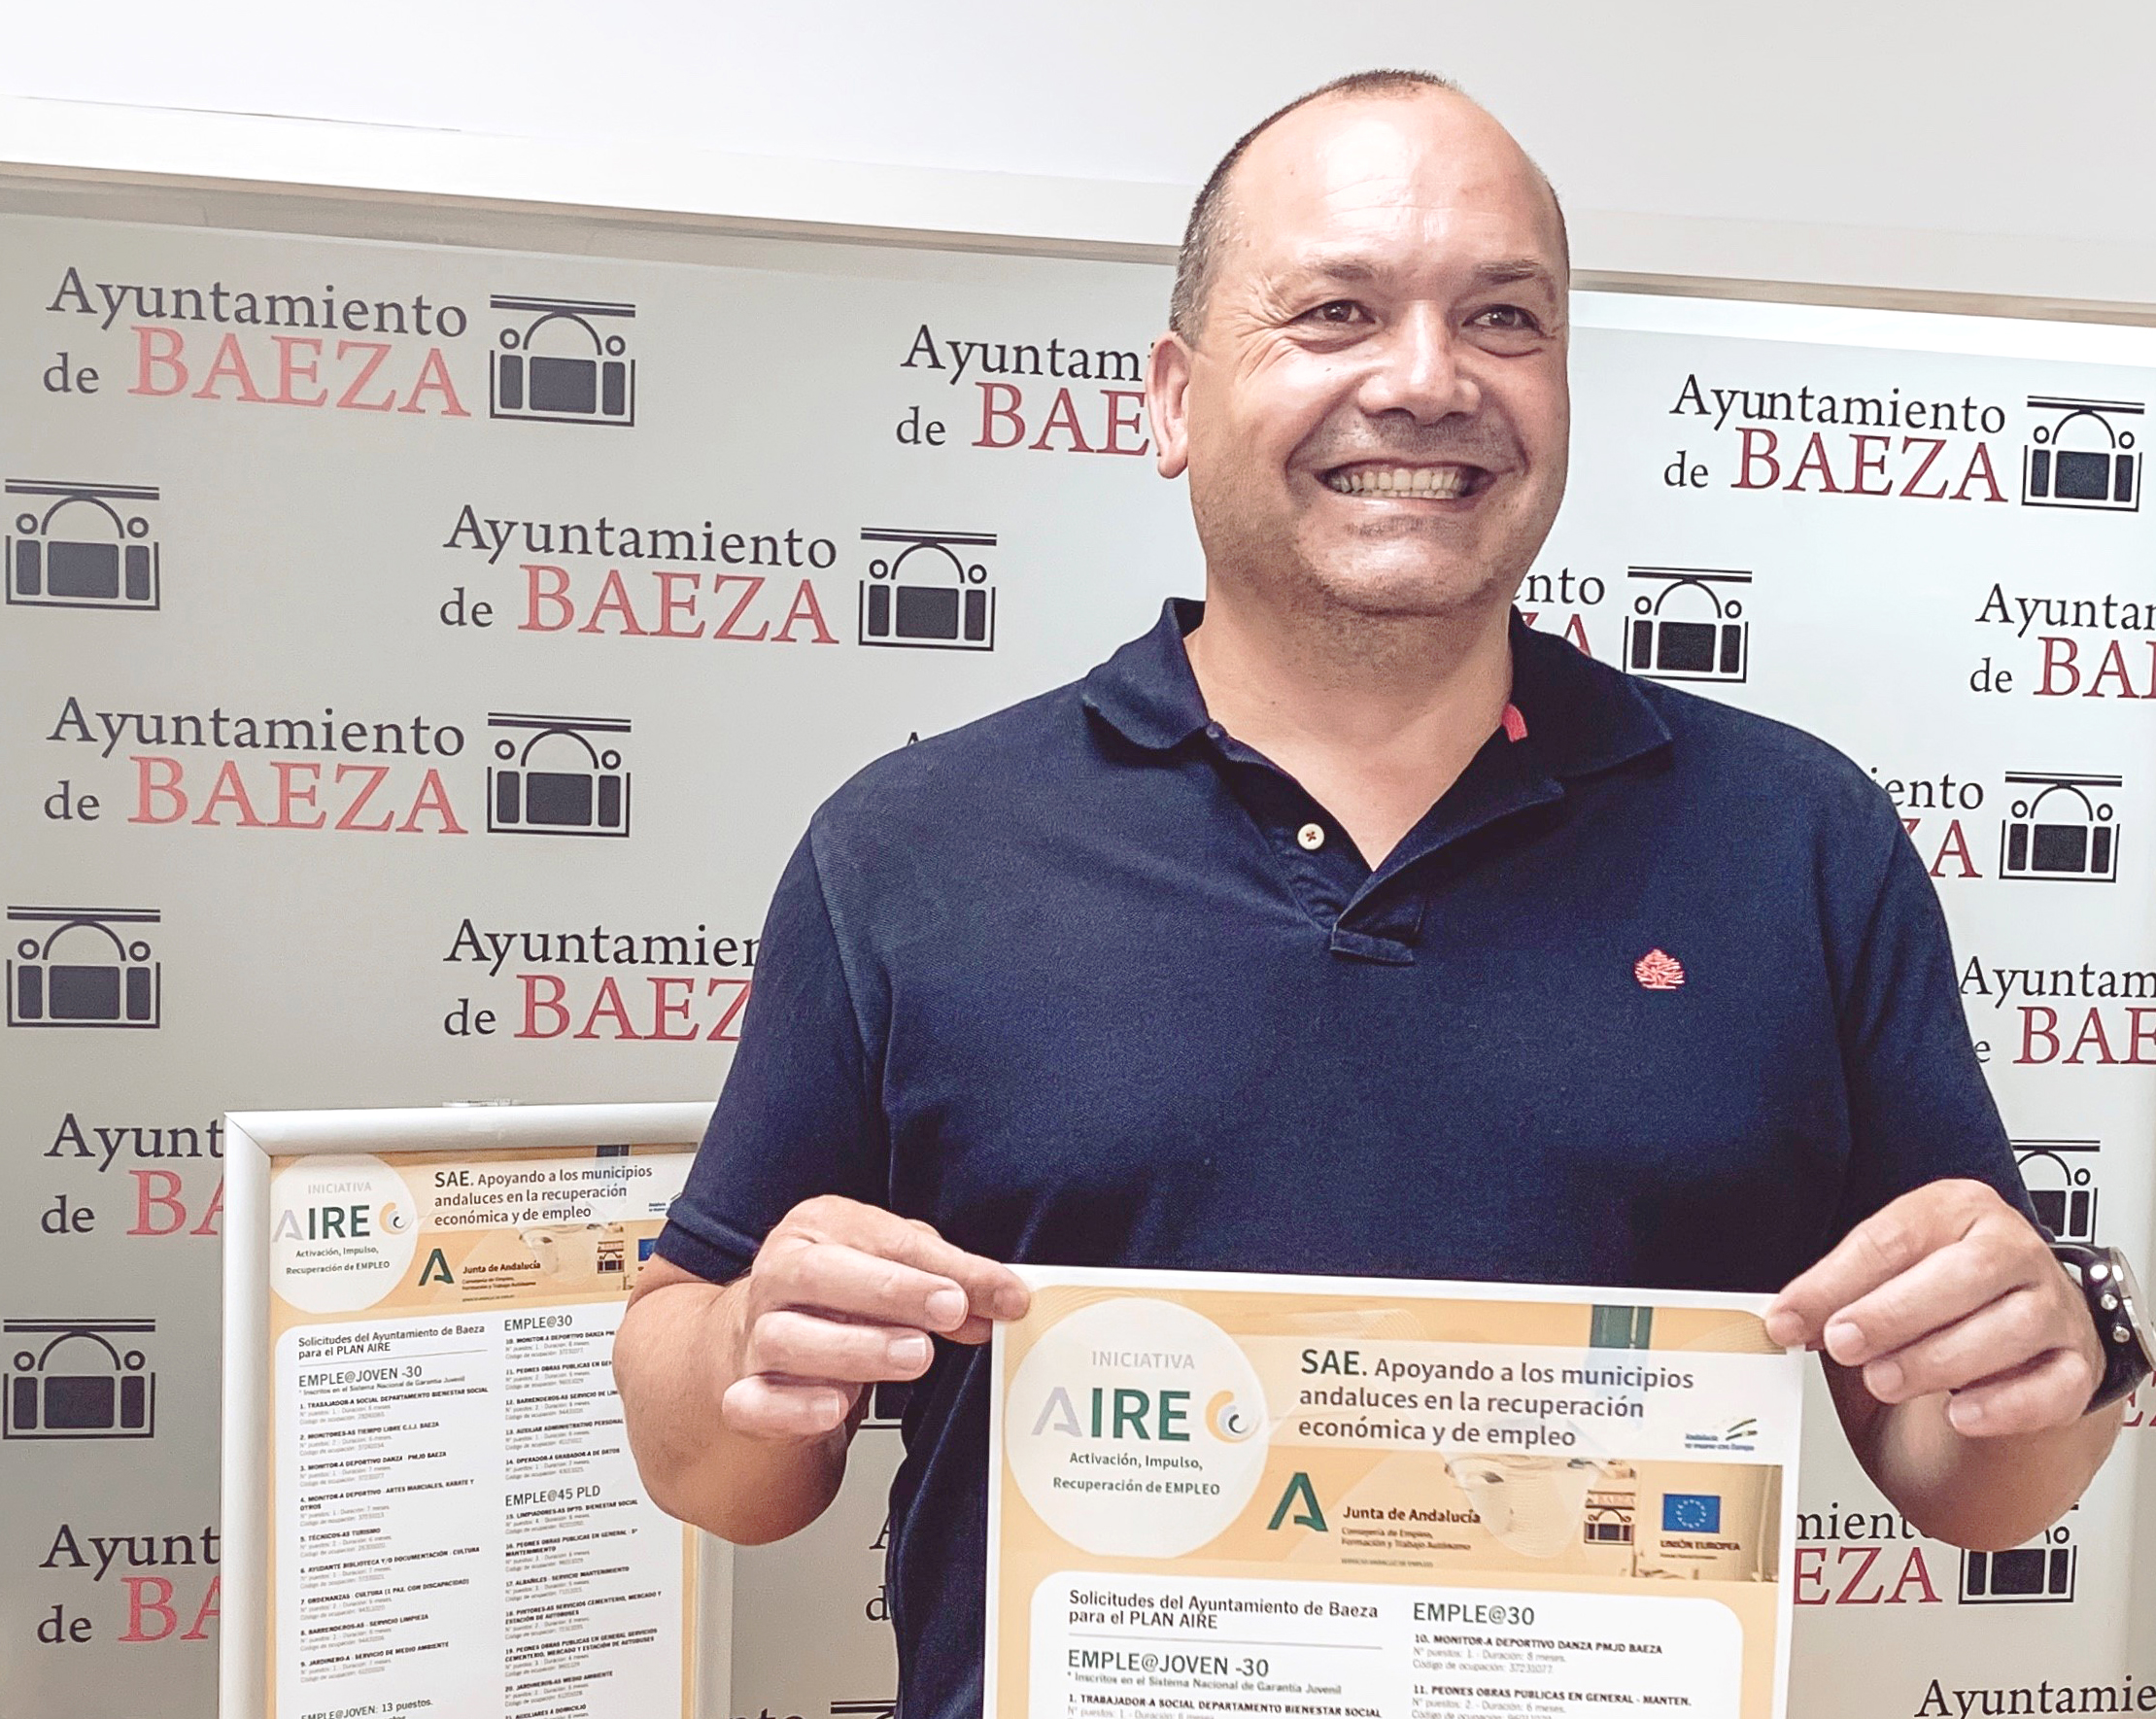 oyente el último Expansión El Ayuntamiento de Baeza empleará a 41 personas a través del Plan AIRE de  la Junta de Andalucía